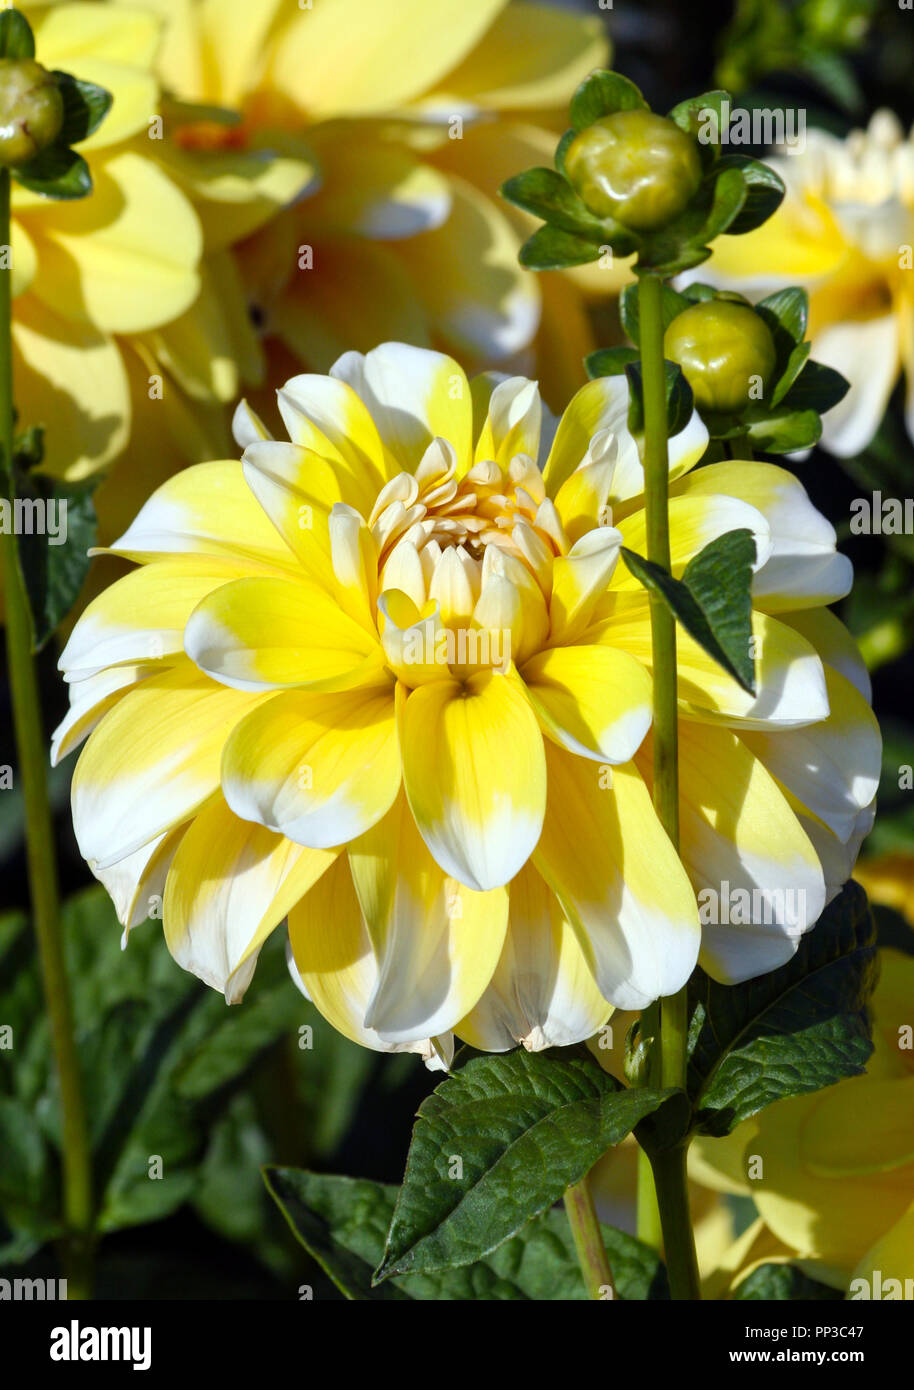 Varietà di crisantemo bahama dalia limone , un fiore in close-up, una grande giallo con petali di colore bianco sulle punte, illuminato dalla luce del sole, Foto Stock